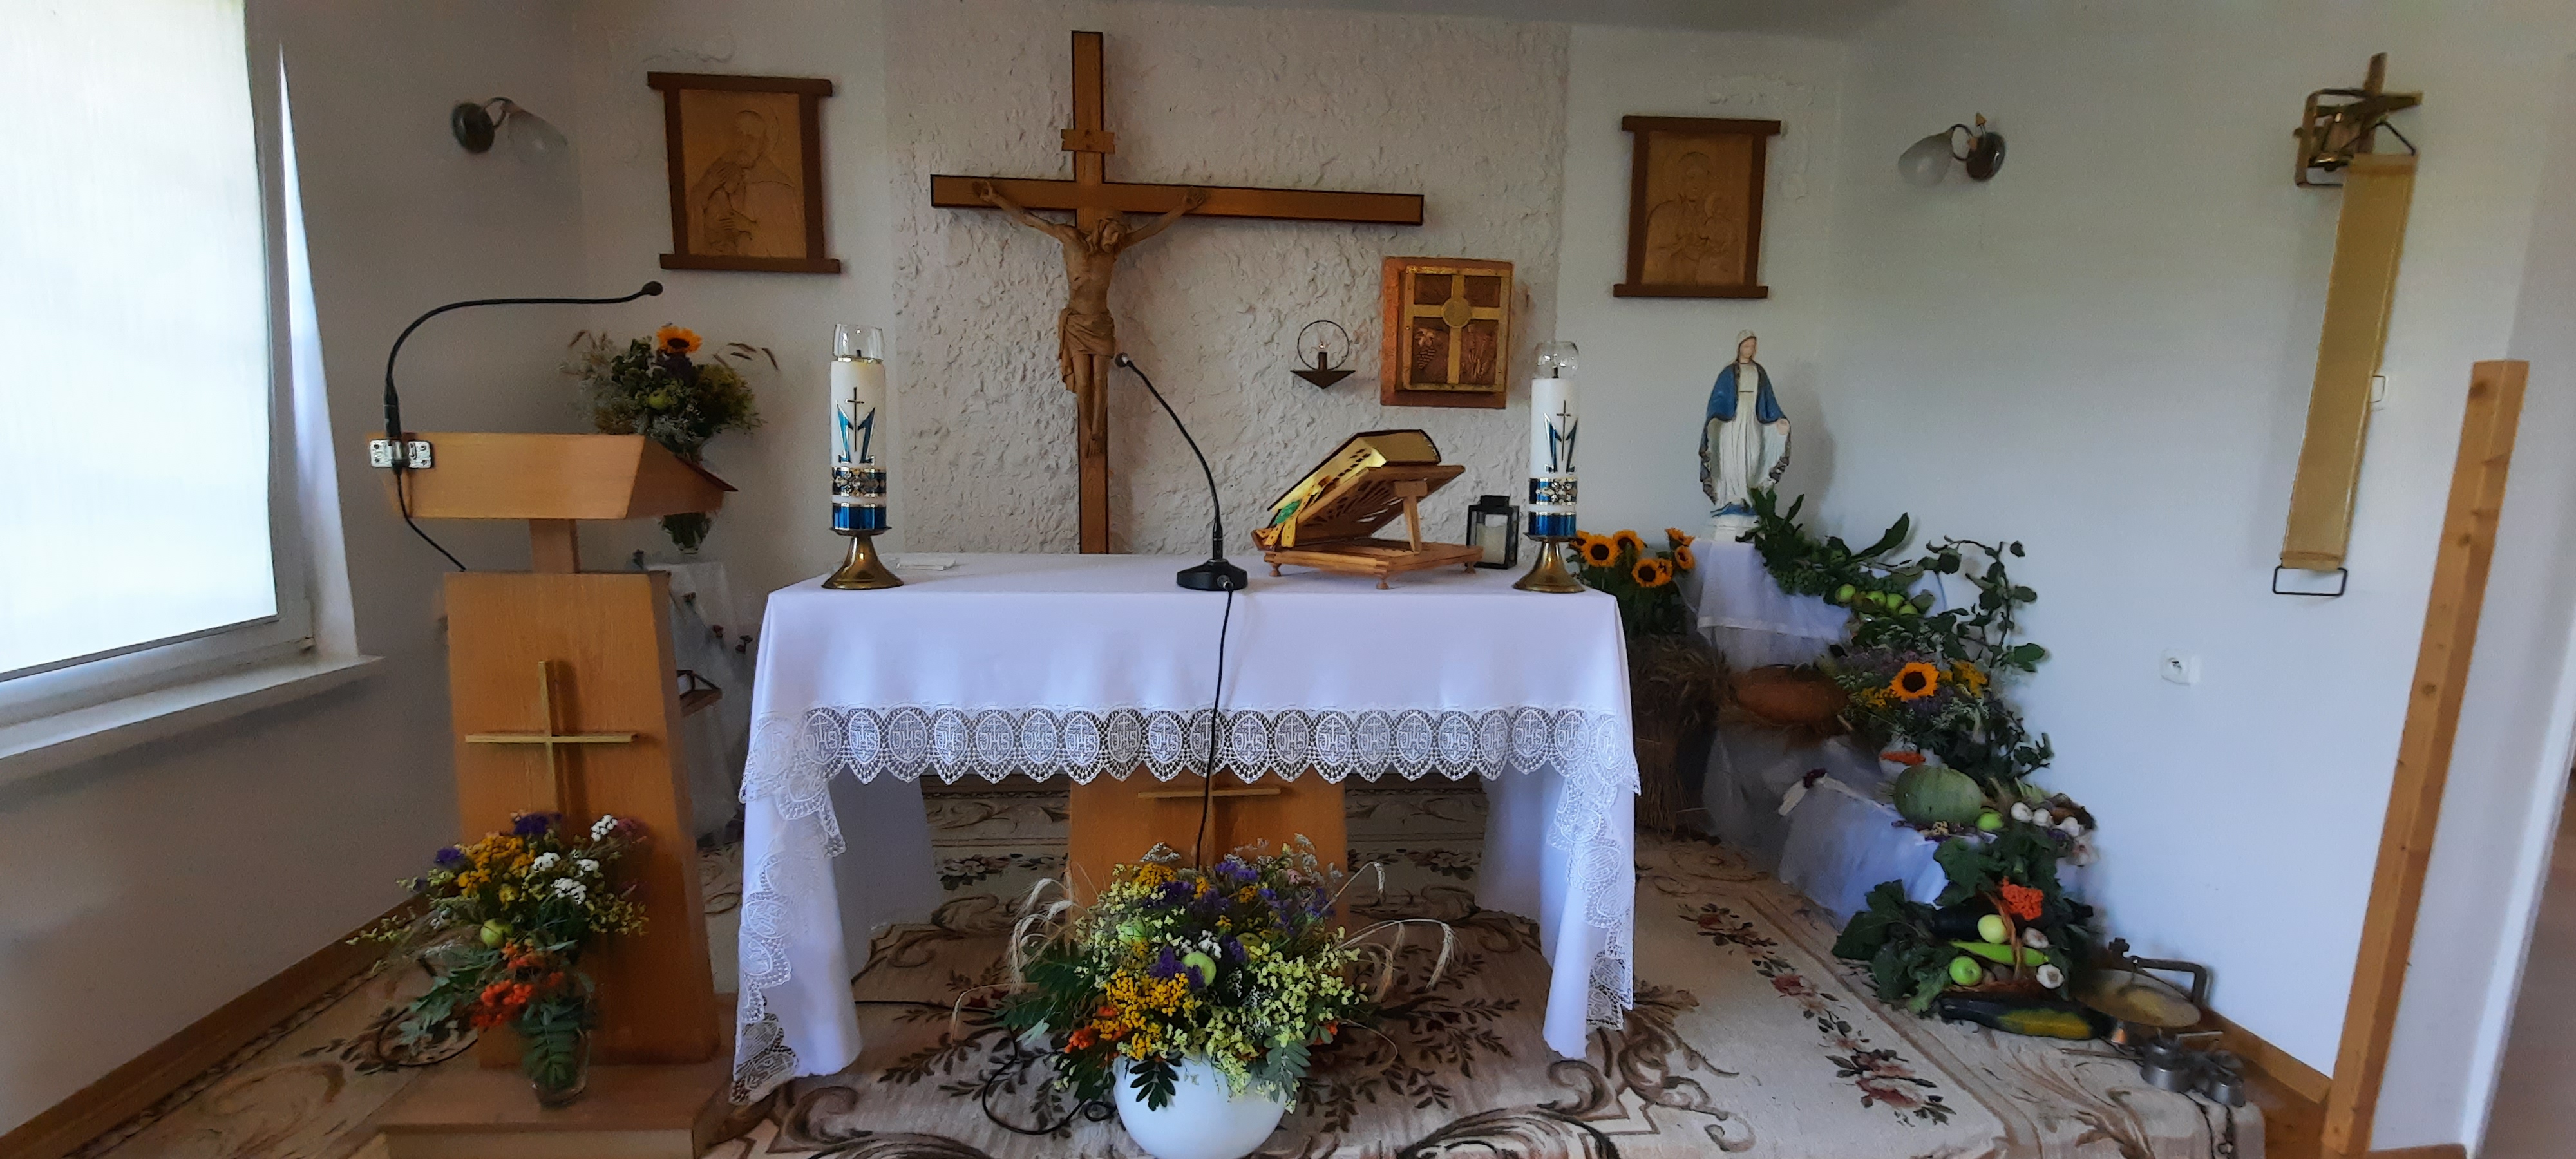 Ołtarz w kościele, przyozdobioniy kwiatami i ziołami